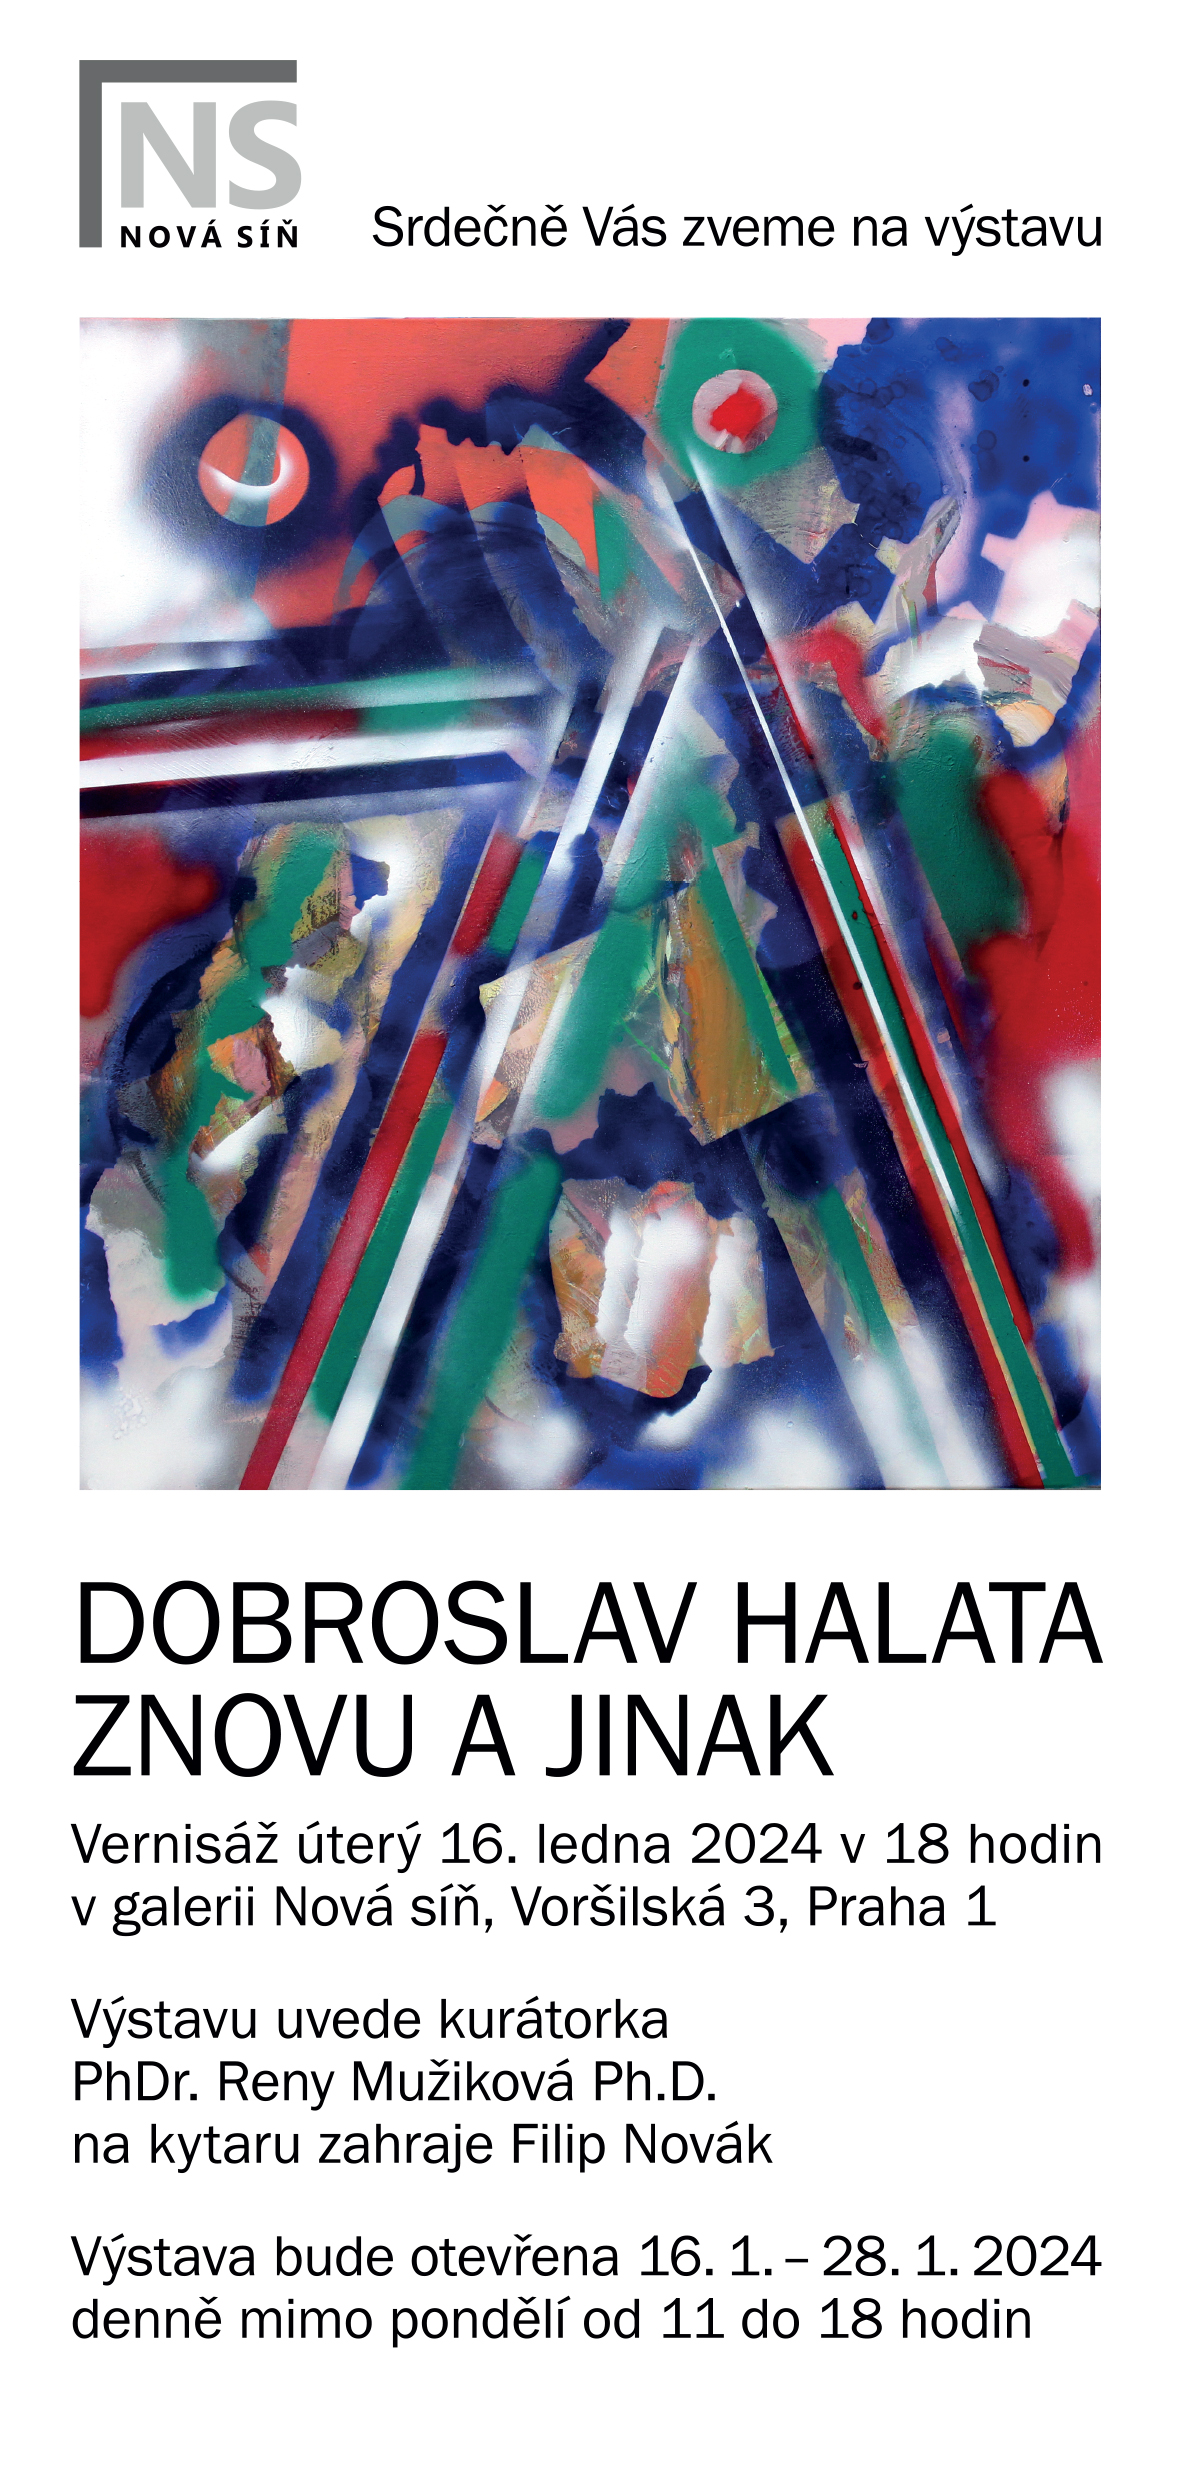 Versniáž výstavy obrazů Dobroslava Halaty „Znovu a jinak“